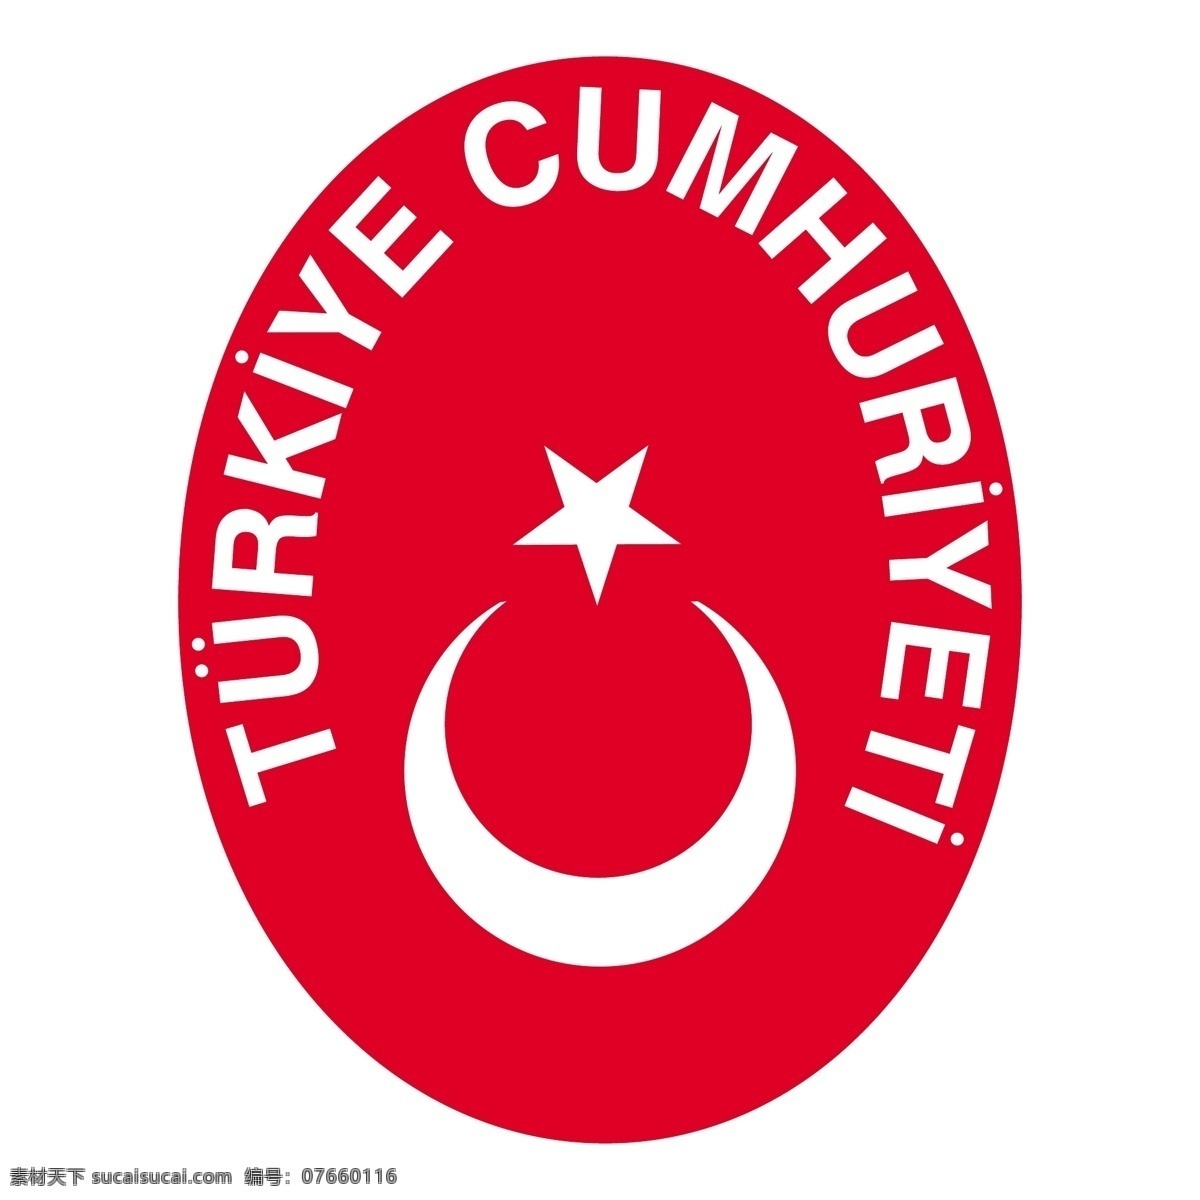 土耳其 艺术 载体 在土耳其 免费 矢量 图像 国旗 剪影 logo 火鸡 图形 地图 建筑家居